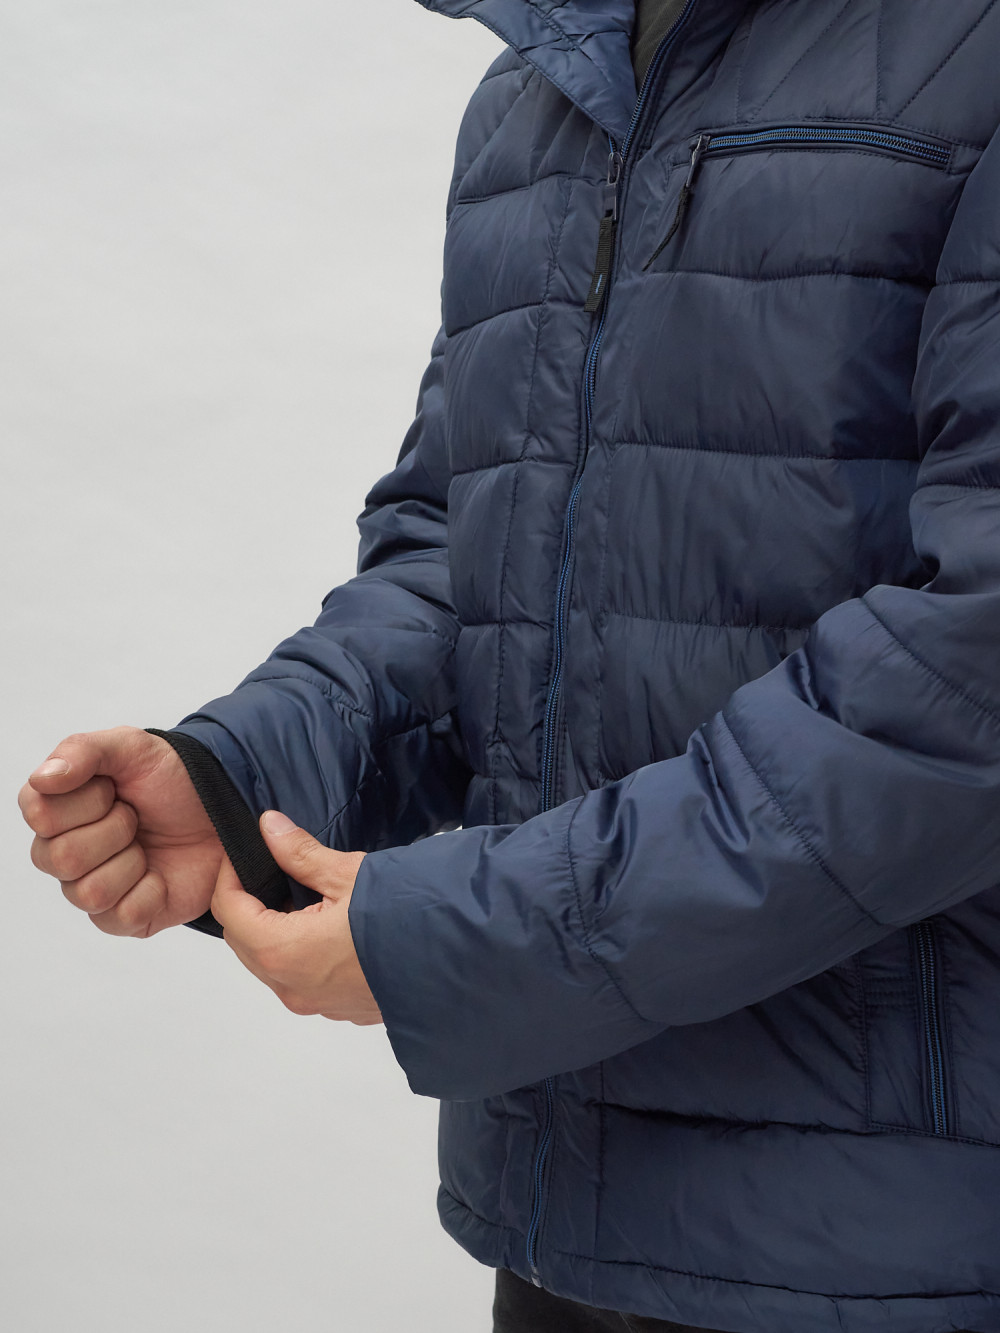 Купить куртку мужскую спортивную весеннюю оптом от производителя недорого в Москве 62187TS 1